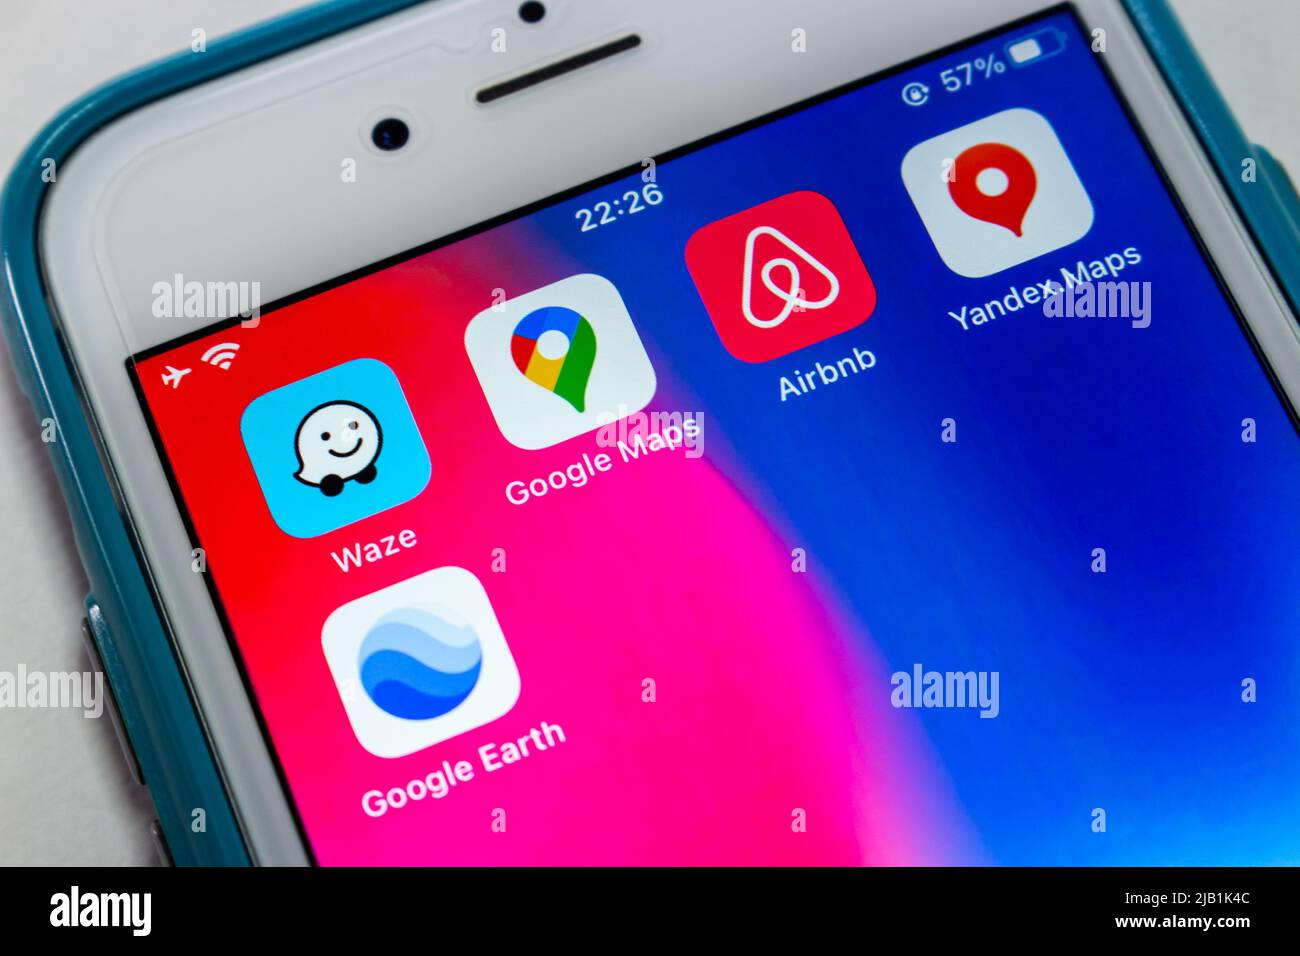 Kumamoto, JAPON - août 3 2021 : application Waze, une application de navigation GPS et une filiale de Google, avec Google Map, Google Earth, Airbnb & Yandex.maps sur iPhone Banque D'Images